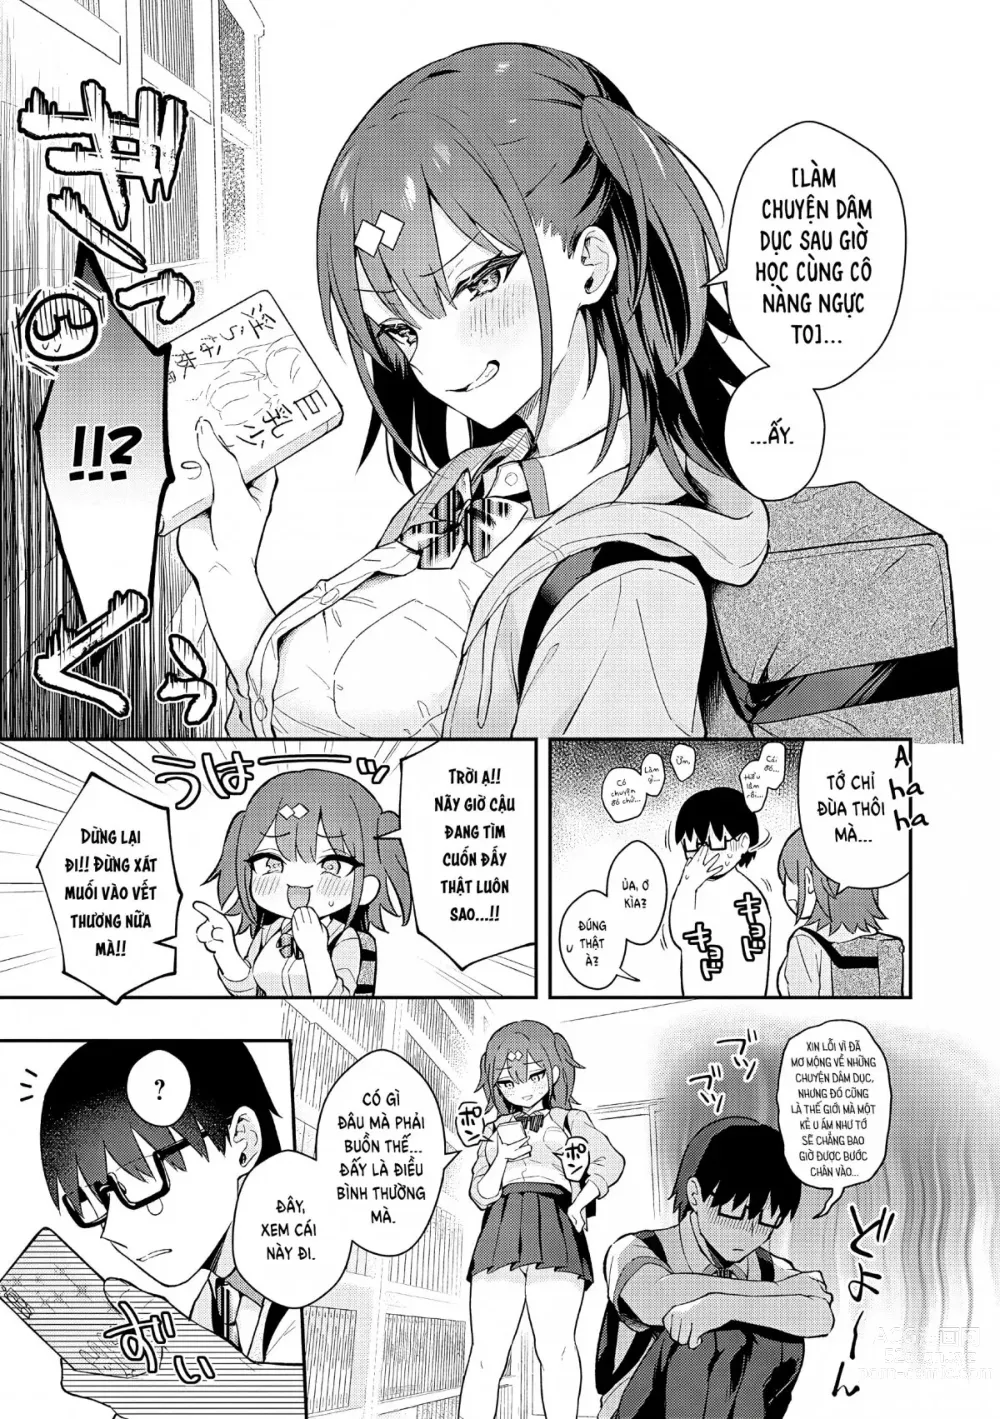 Page 6 of manga Tuyệt hơn cả giả tưởng (decensored)